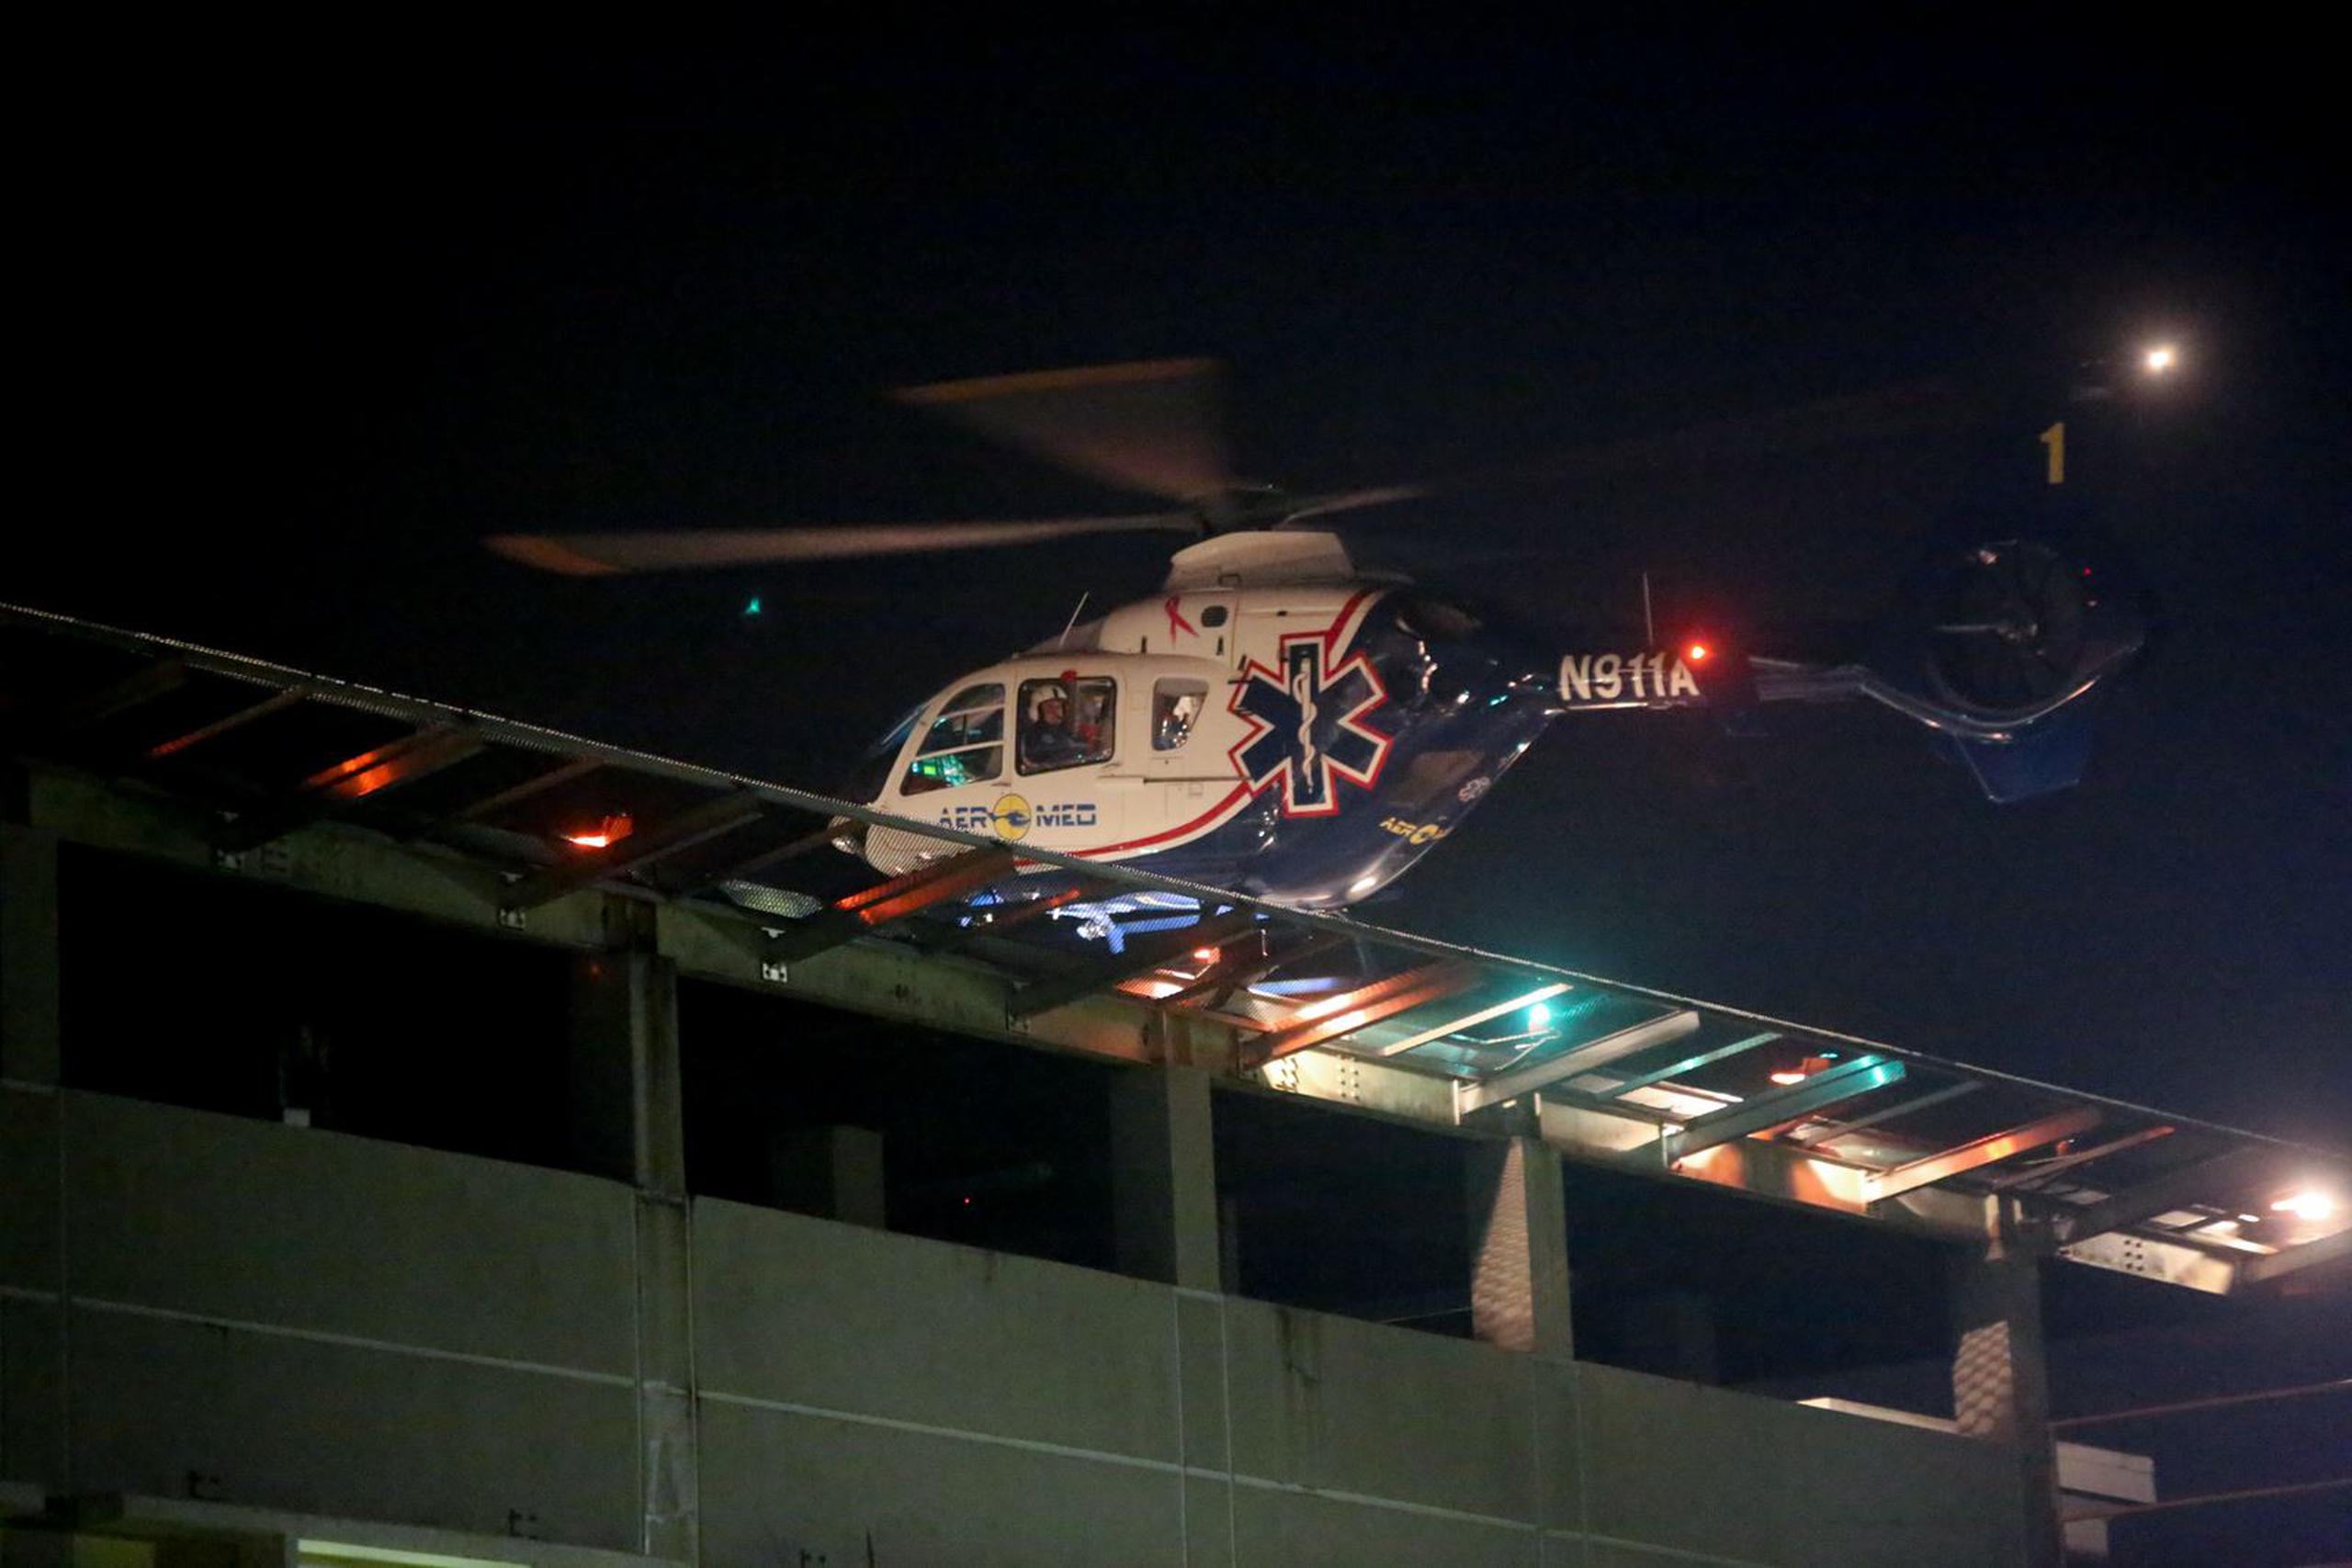 Individuo llega al Centro Médico en ambulancia aérea.